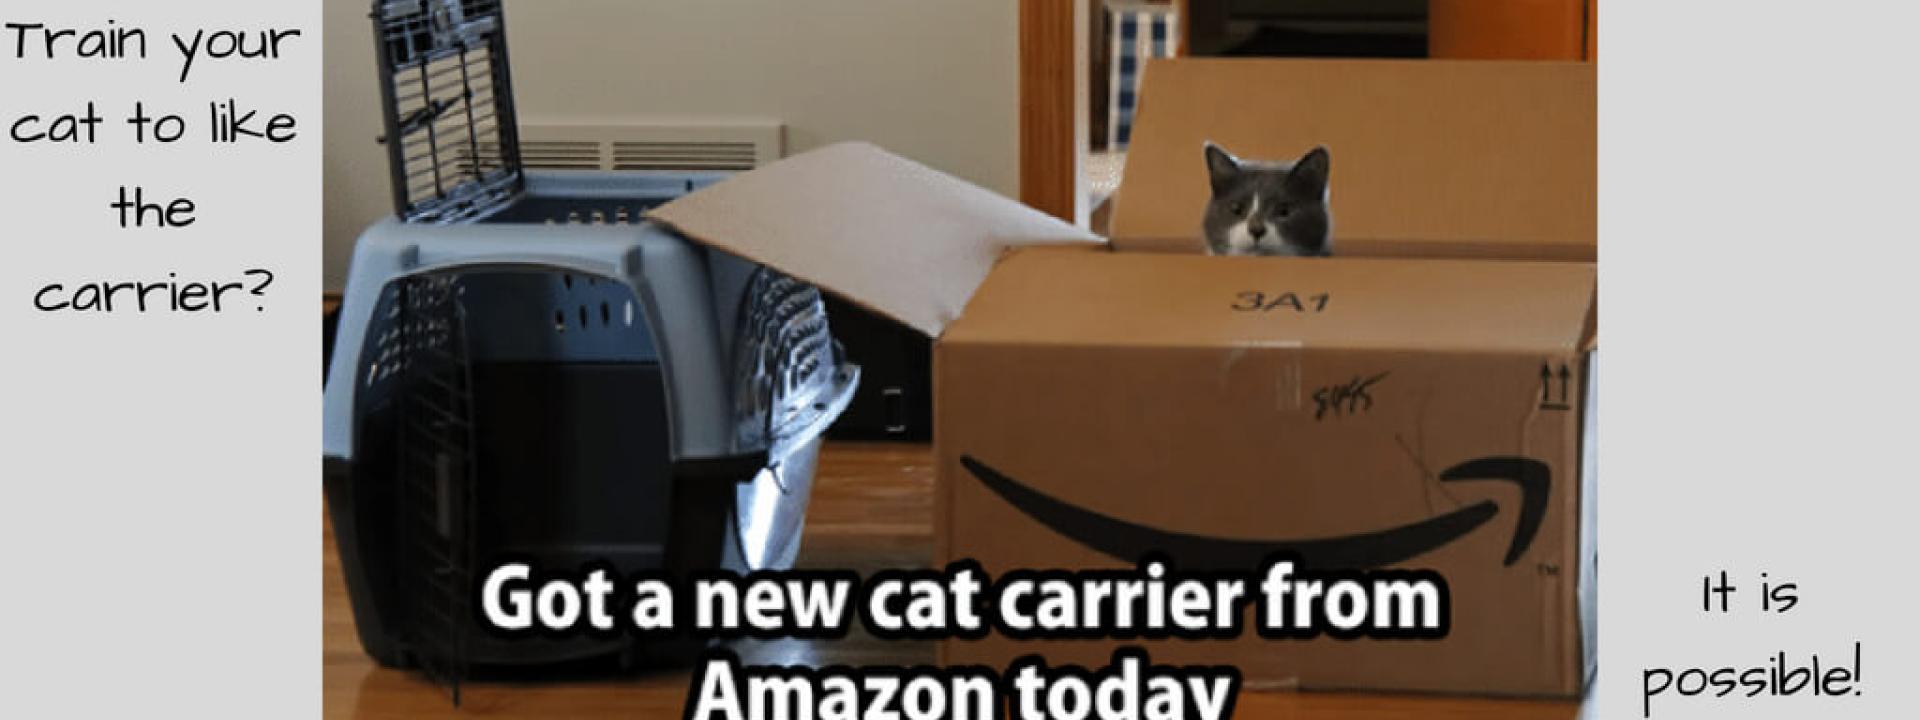 cat-carrier-Blog-Header.jpg